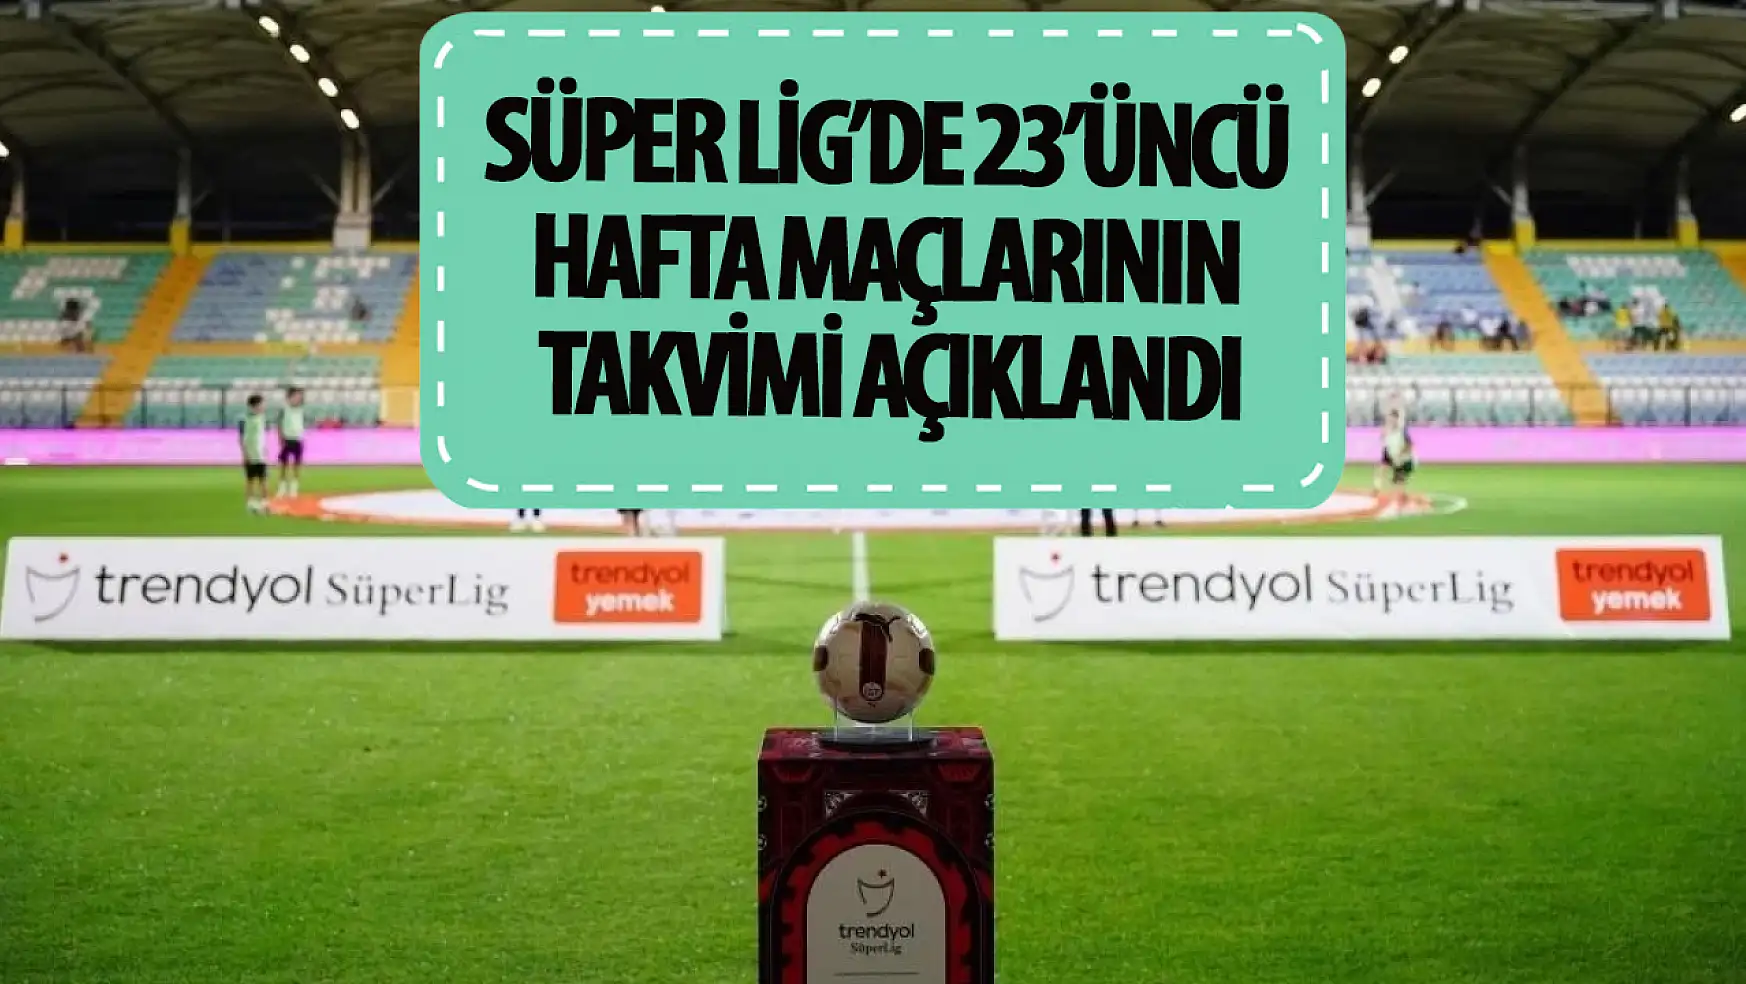 Süper Lig'de 23'üncü hafta maçlarının takvimi açıklandı!